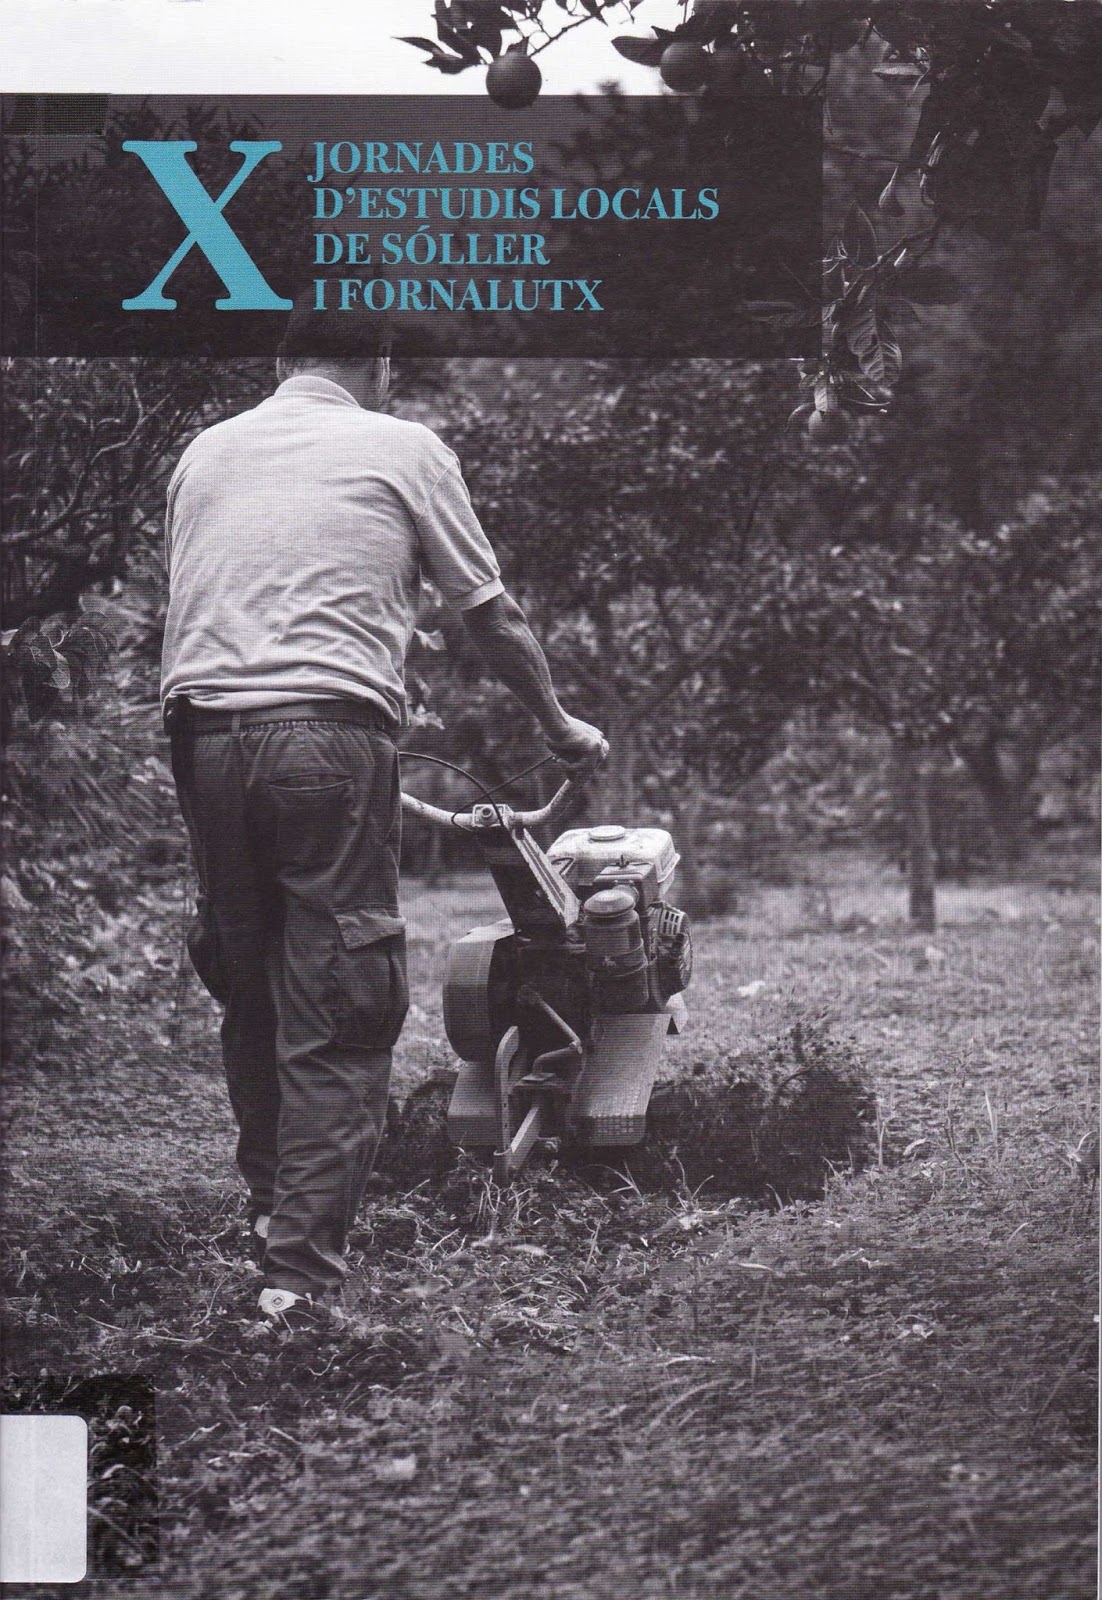 Imagen de portada del libro X Jornades d'Estudis Locals de Sóller i Fornalutx